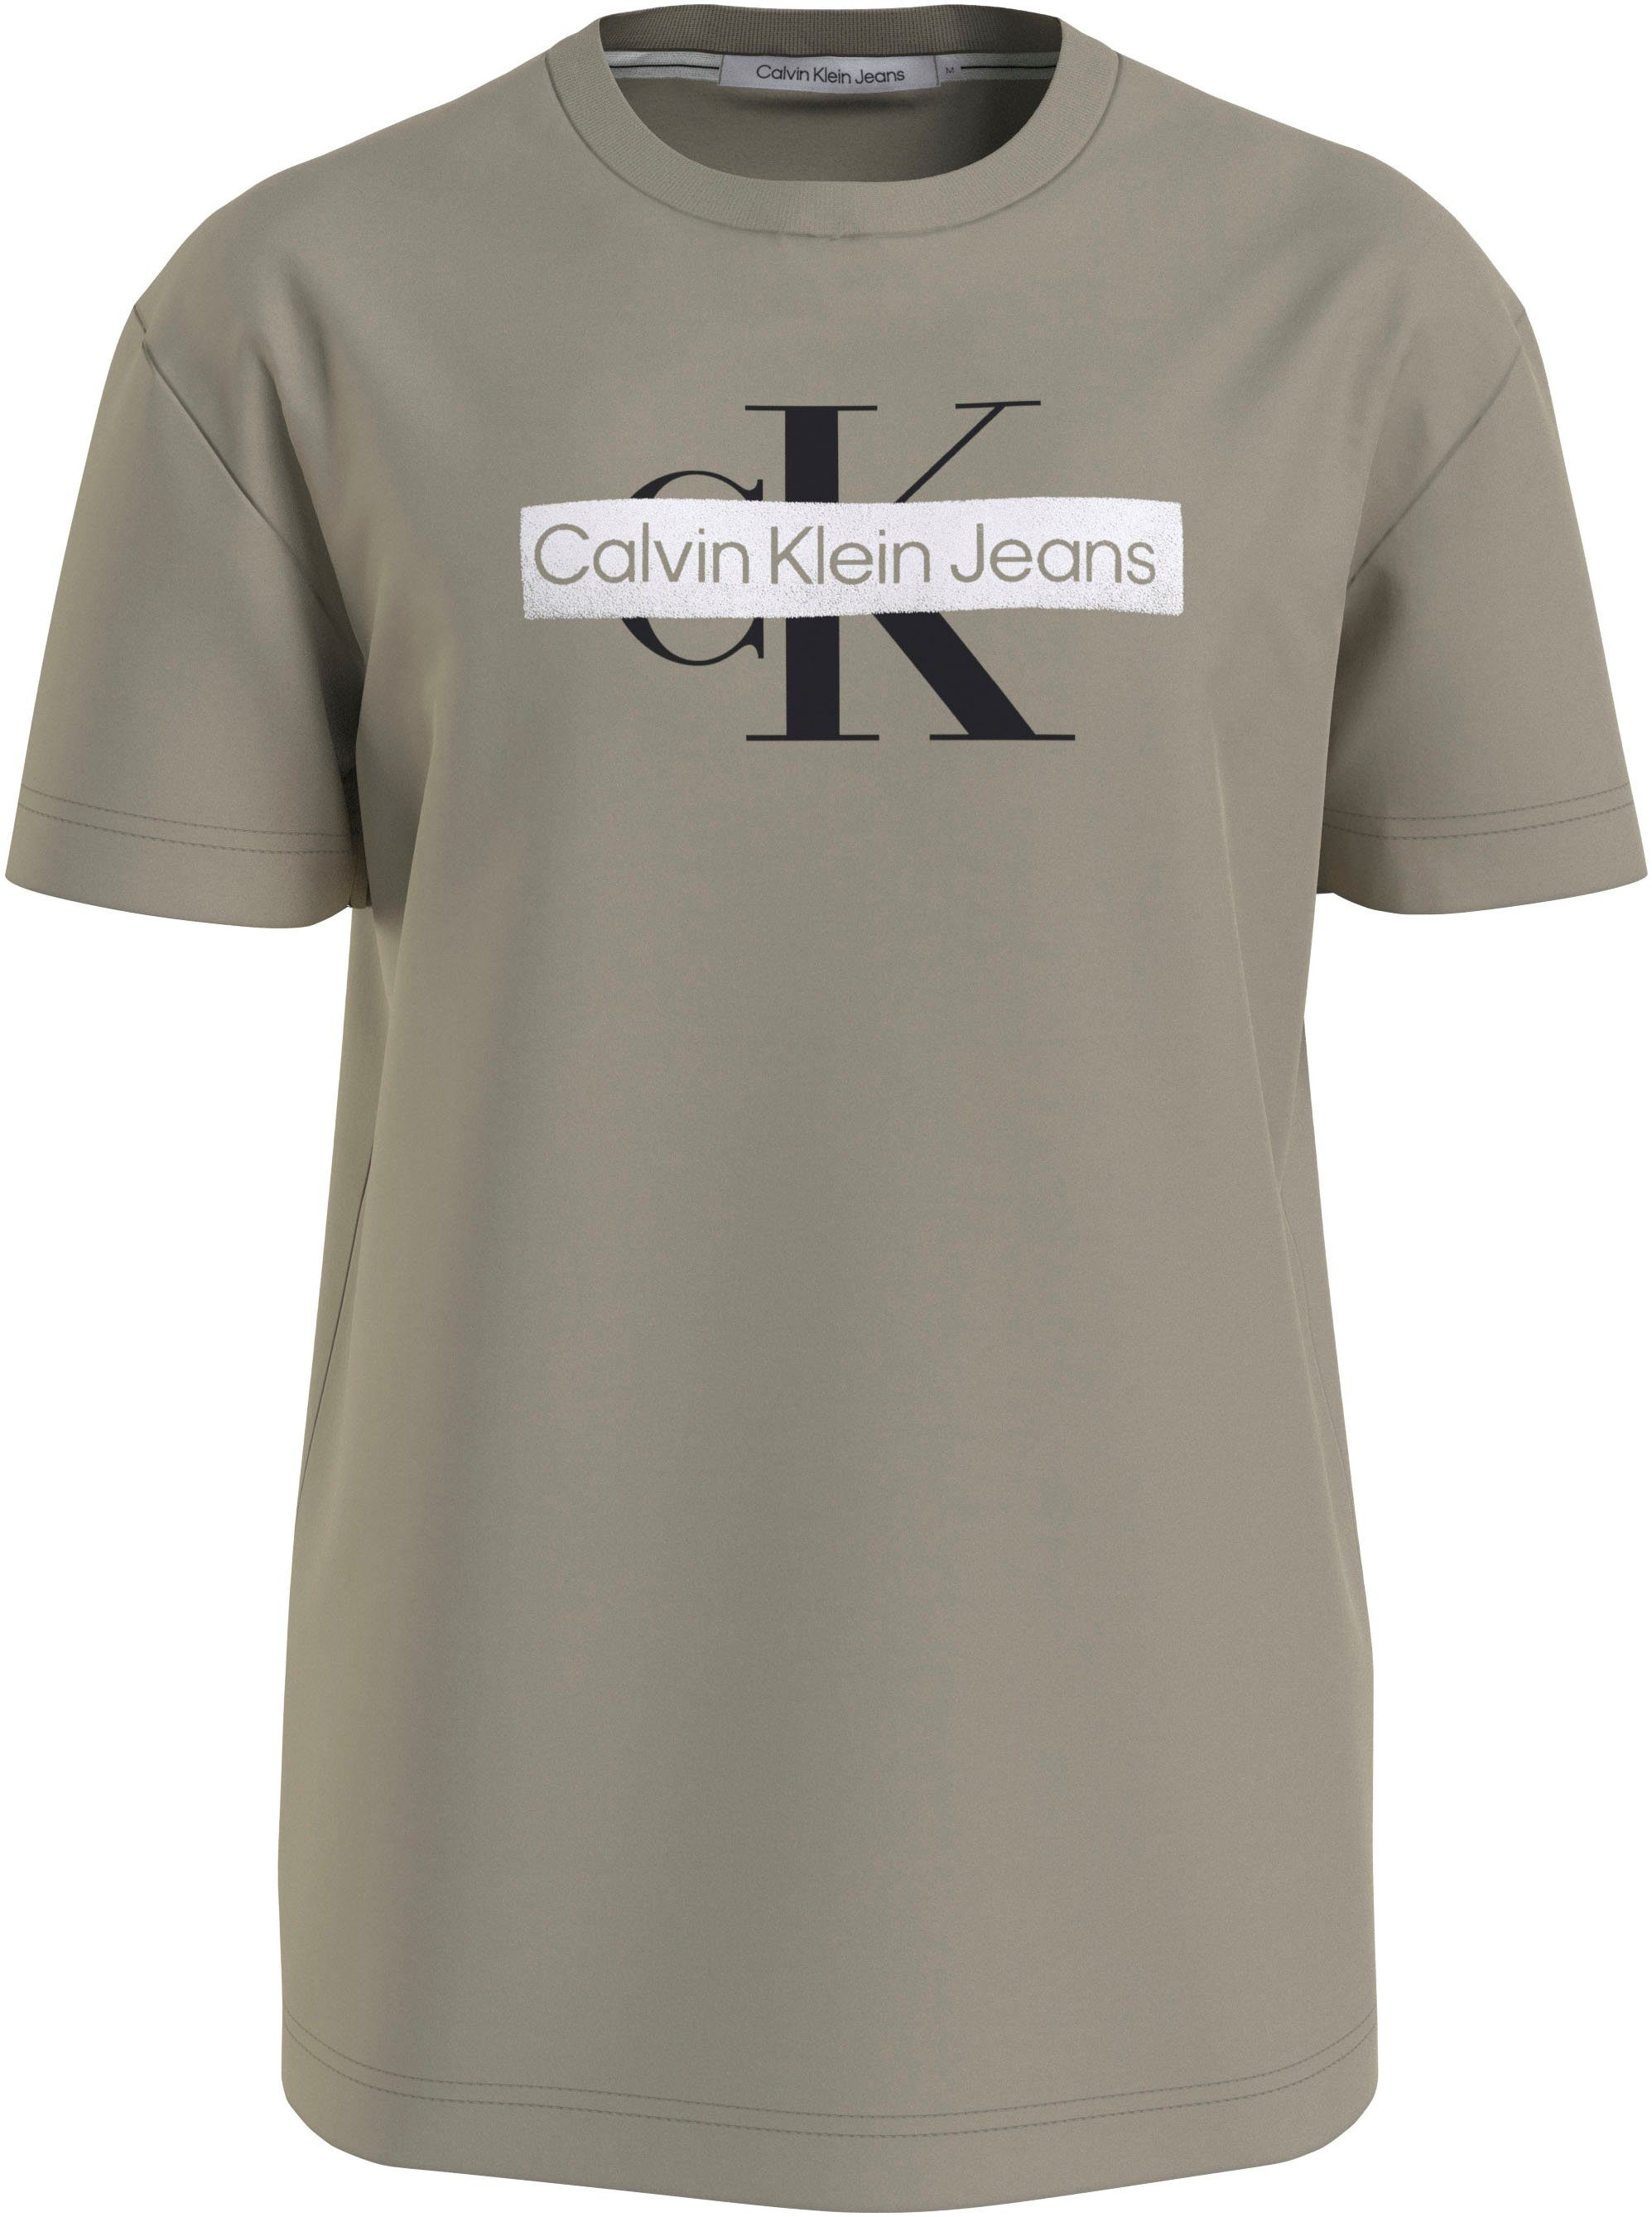 Calvin Klein MONOLOGO Jeans TEE T-Shirt STENCIL beige